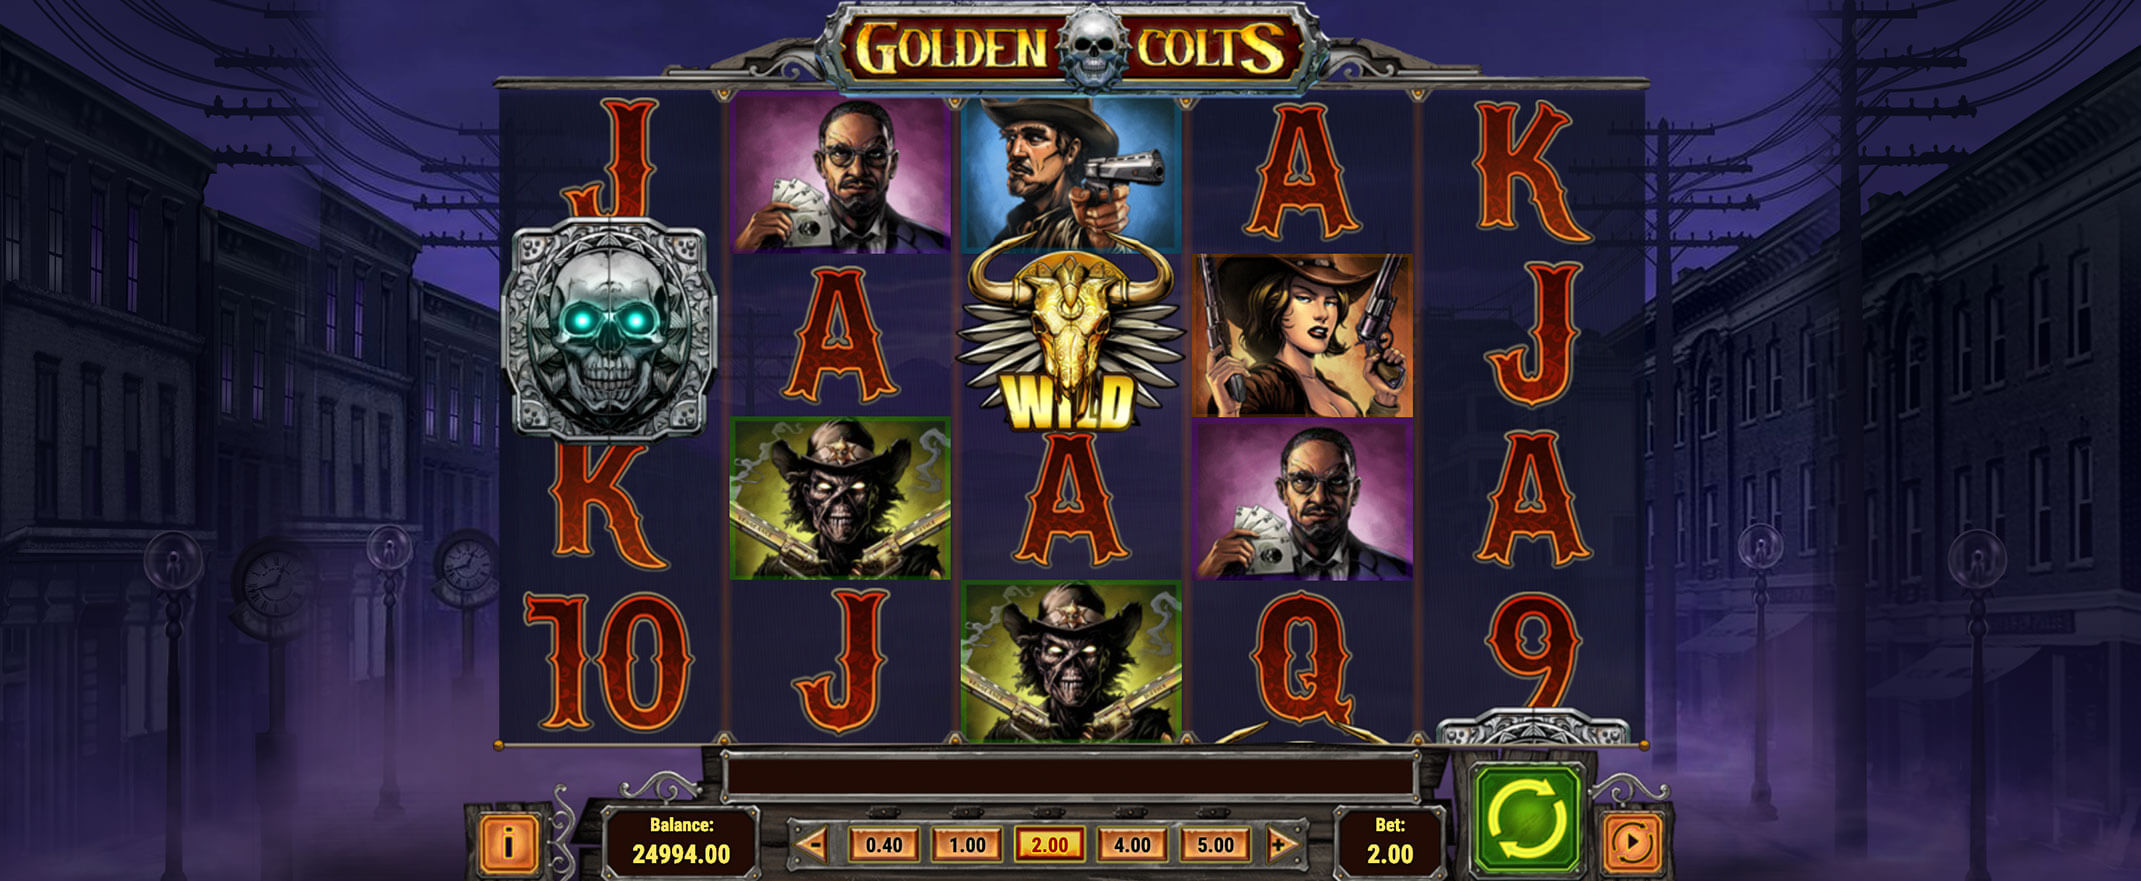 Golden Colts Spielautomat von Play'n Go